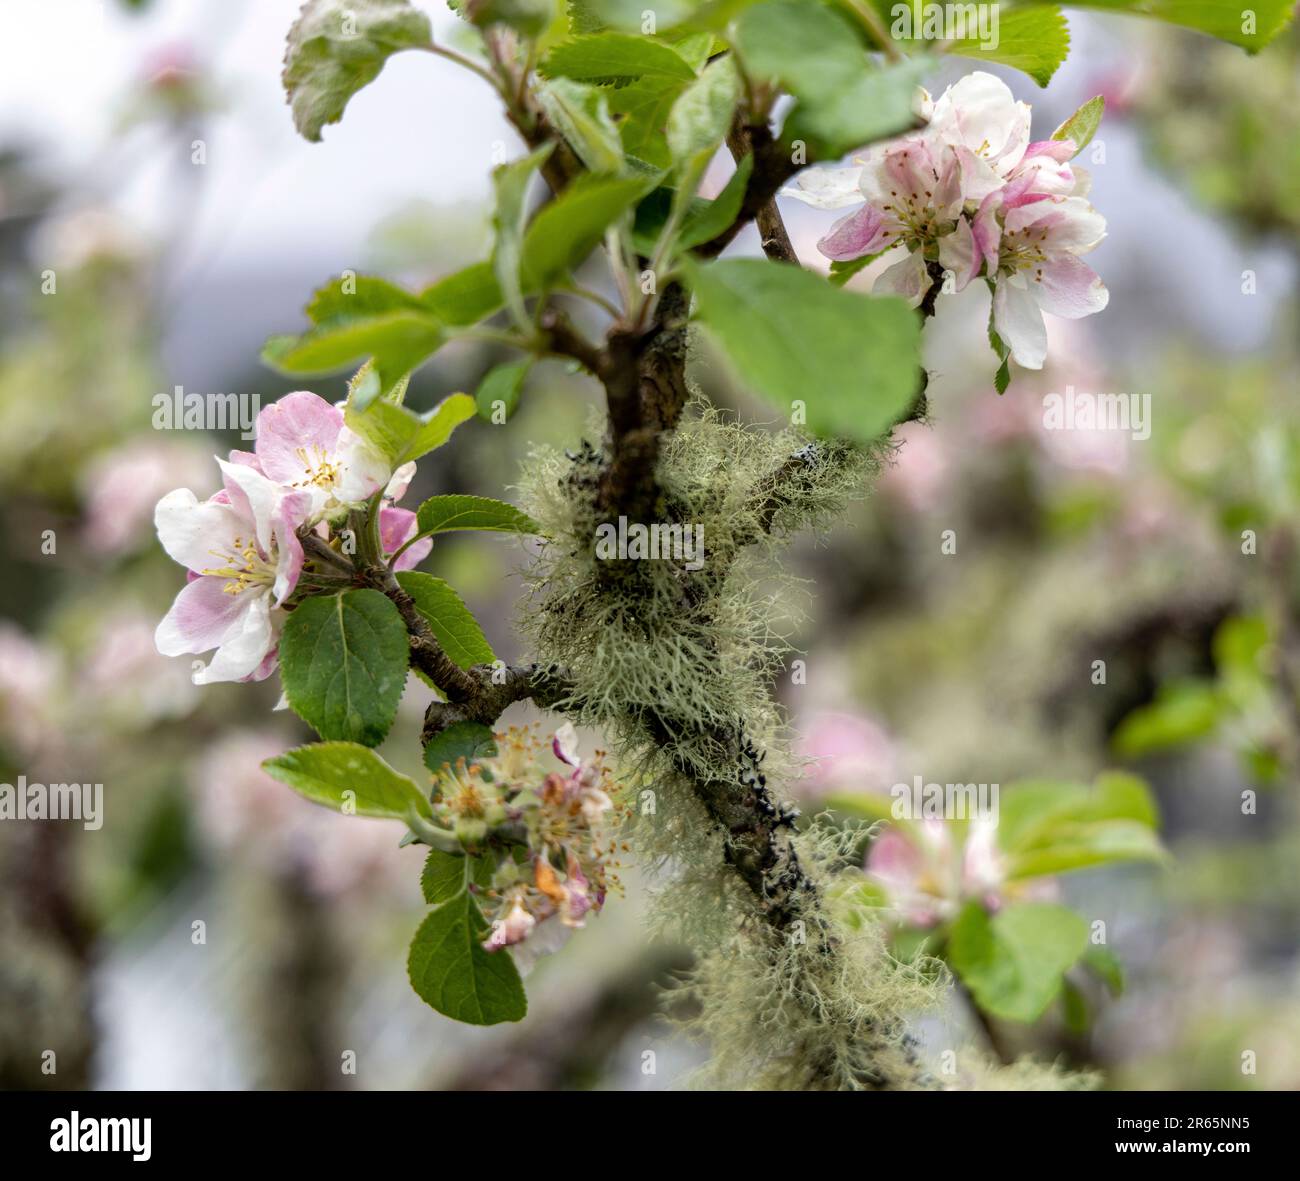 Pommier aux fleurs blanches et rose pastel recouvert de mousse dans le jardin clos du château de Glenveagh, Churchill, Co Donegal, République d'Irlande. Banque D'Images